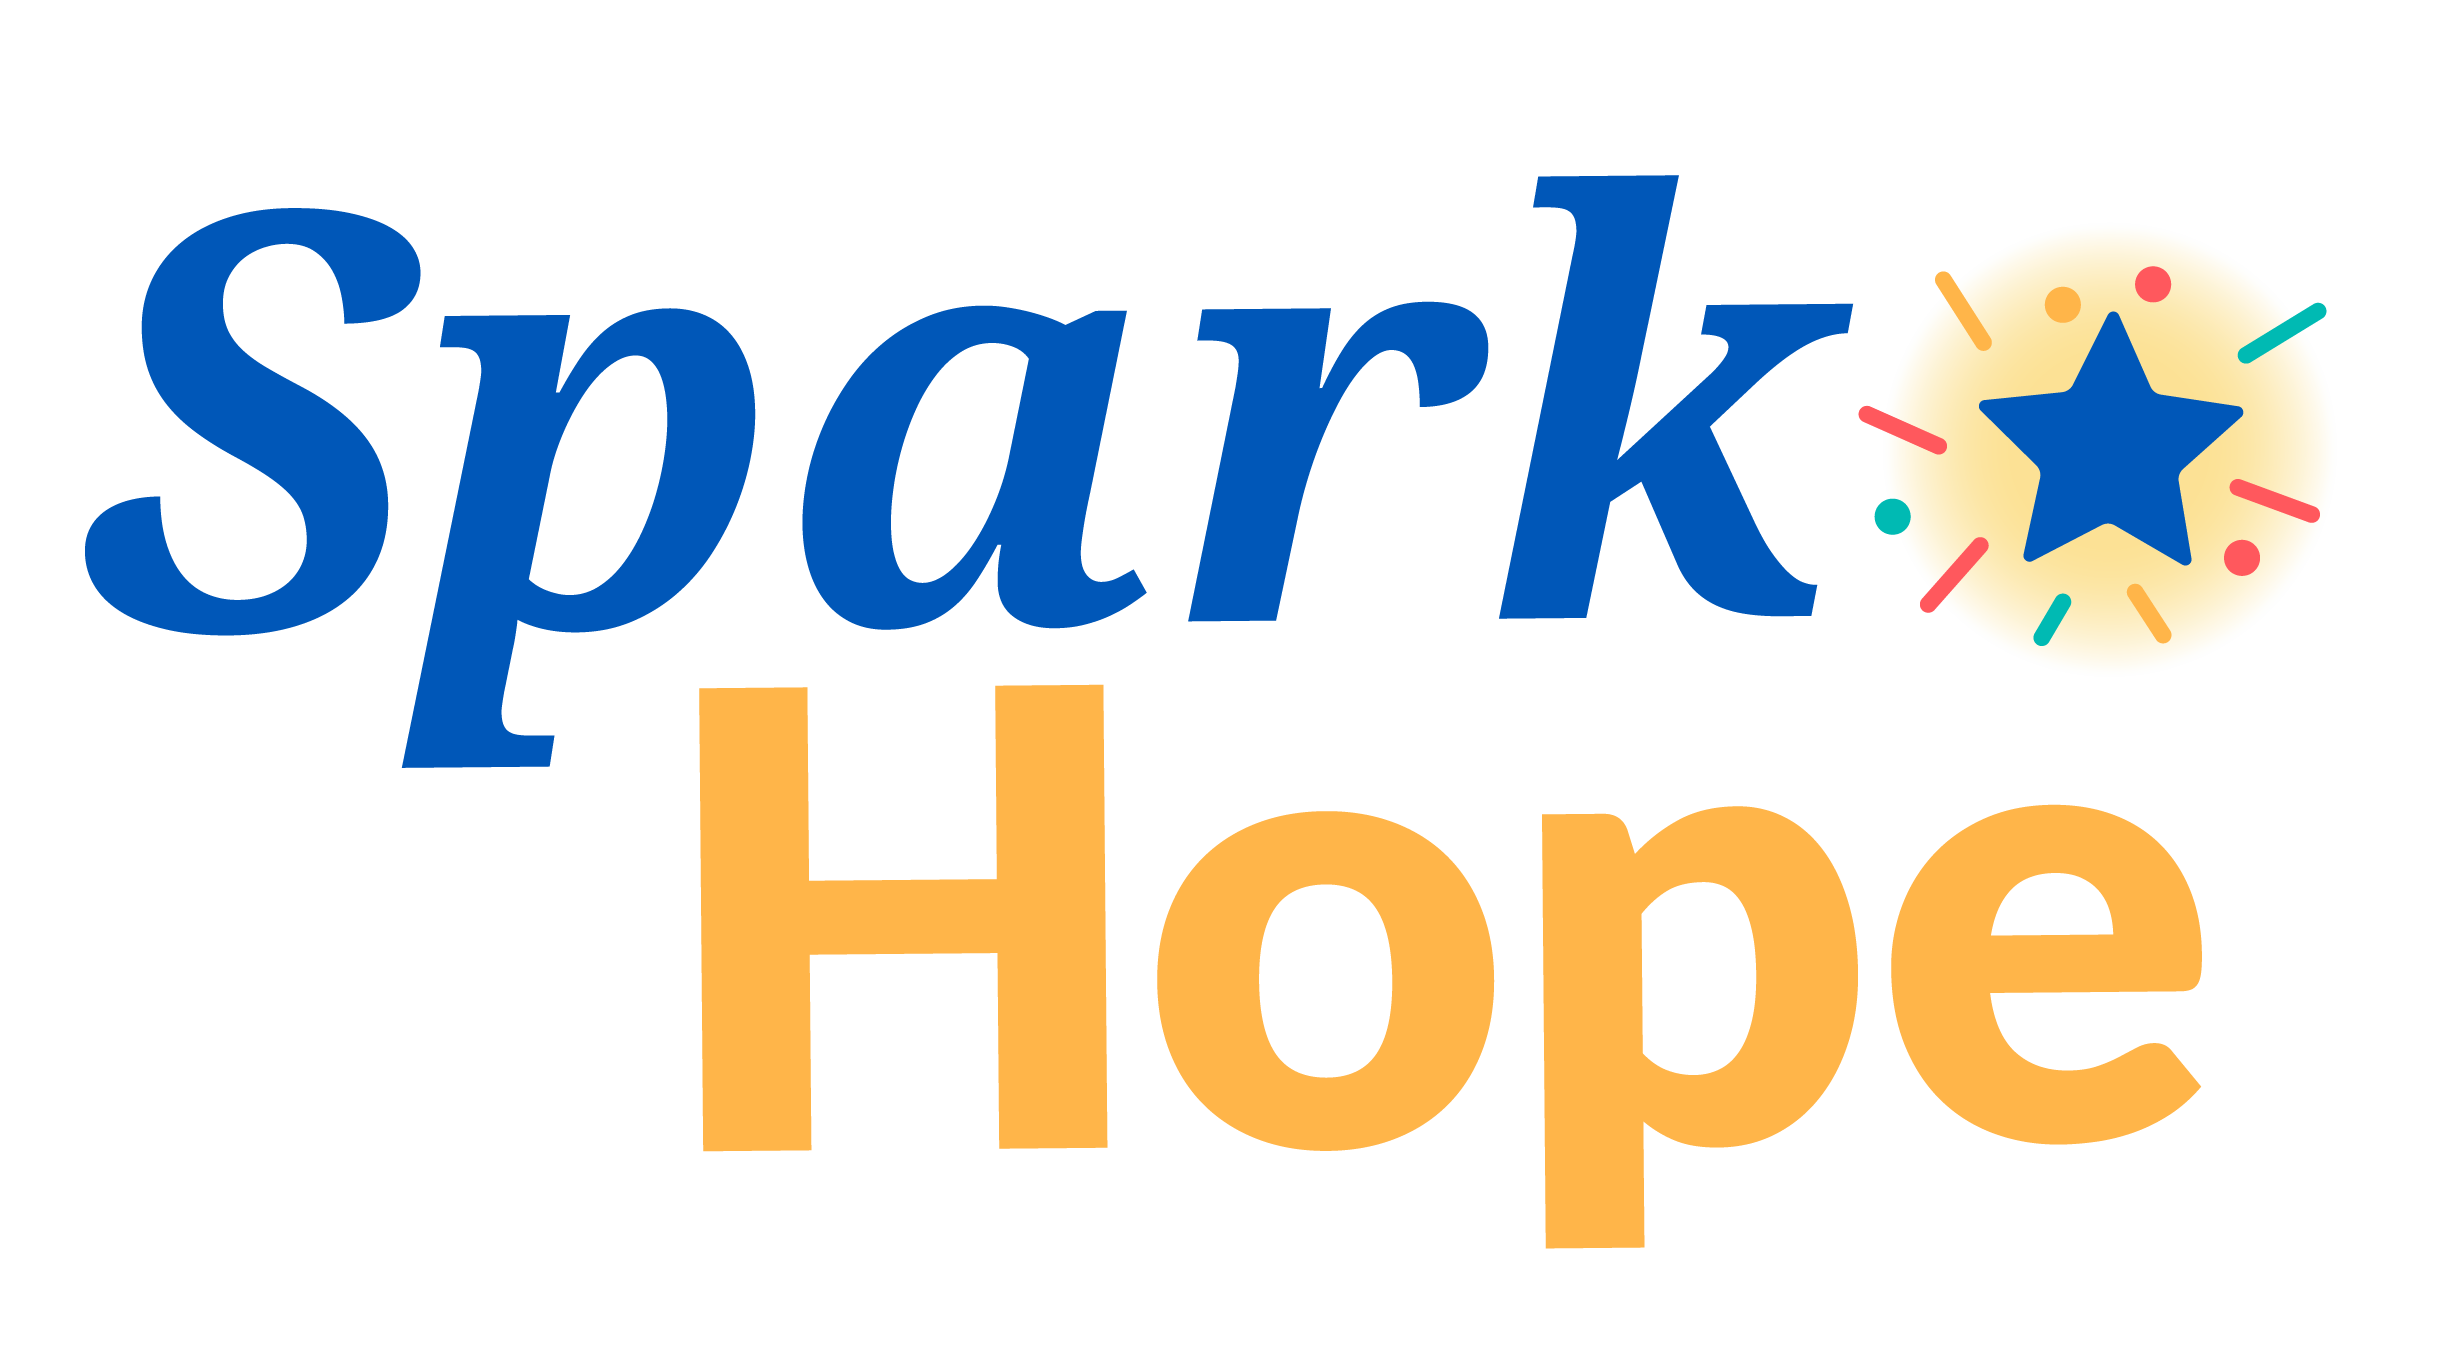 Text: Spark Hope